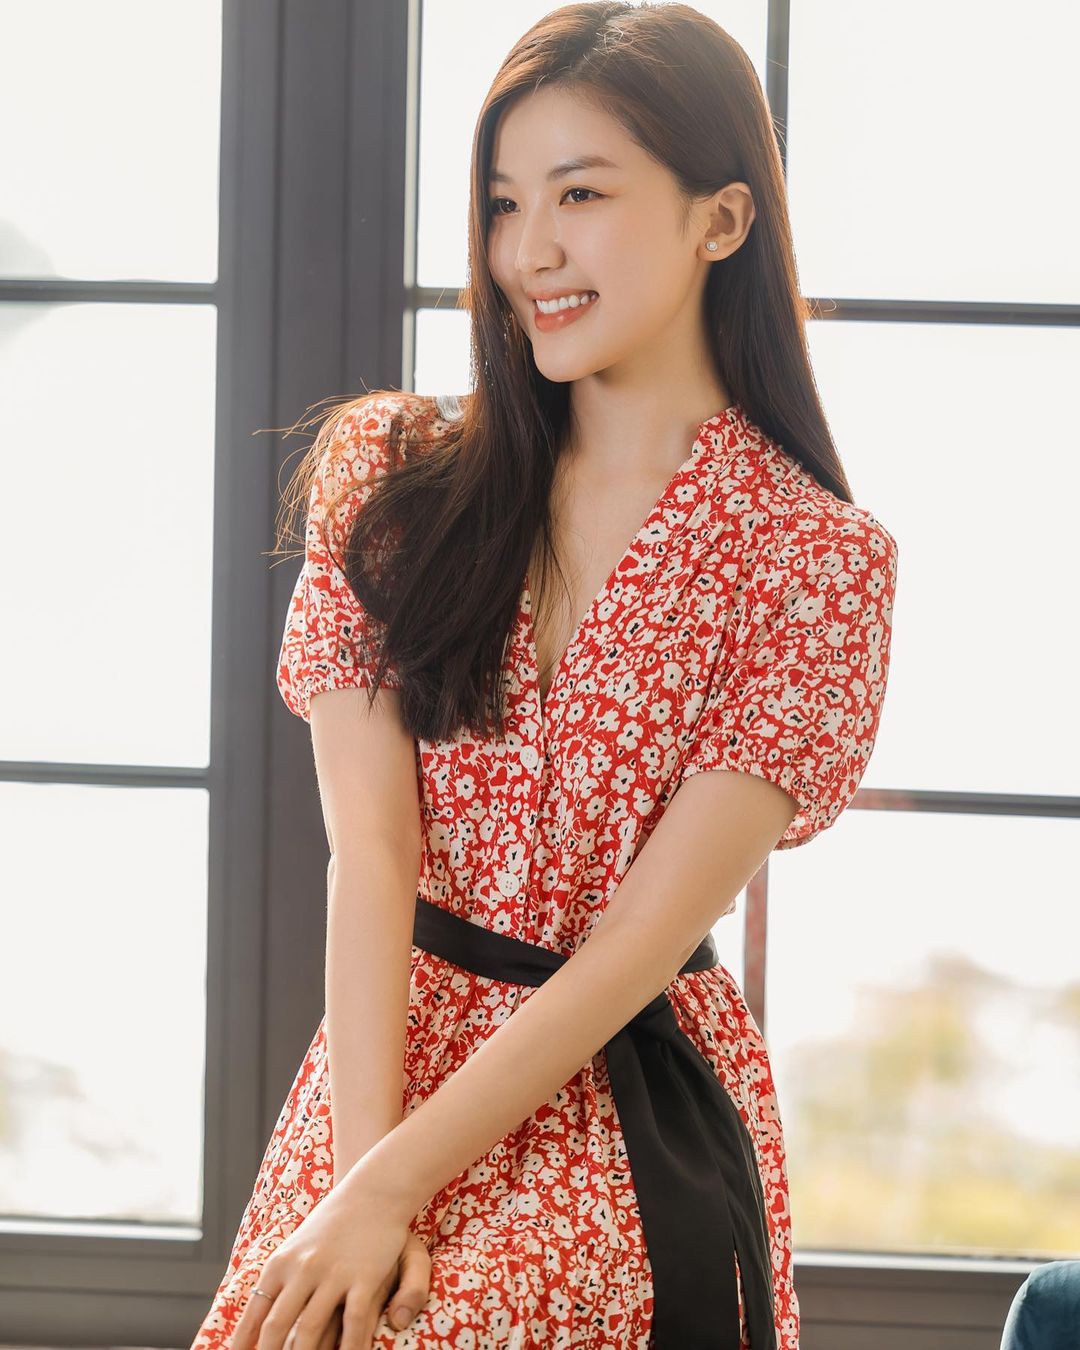 Nữ diễn viên quê Thanh Hóa mặt xinh, dáng đẹp cao hơn 1m70 chẳng thua kém hoa hậu - 1